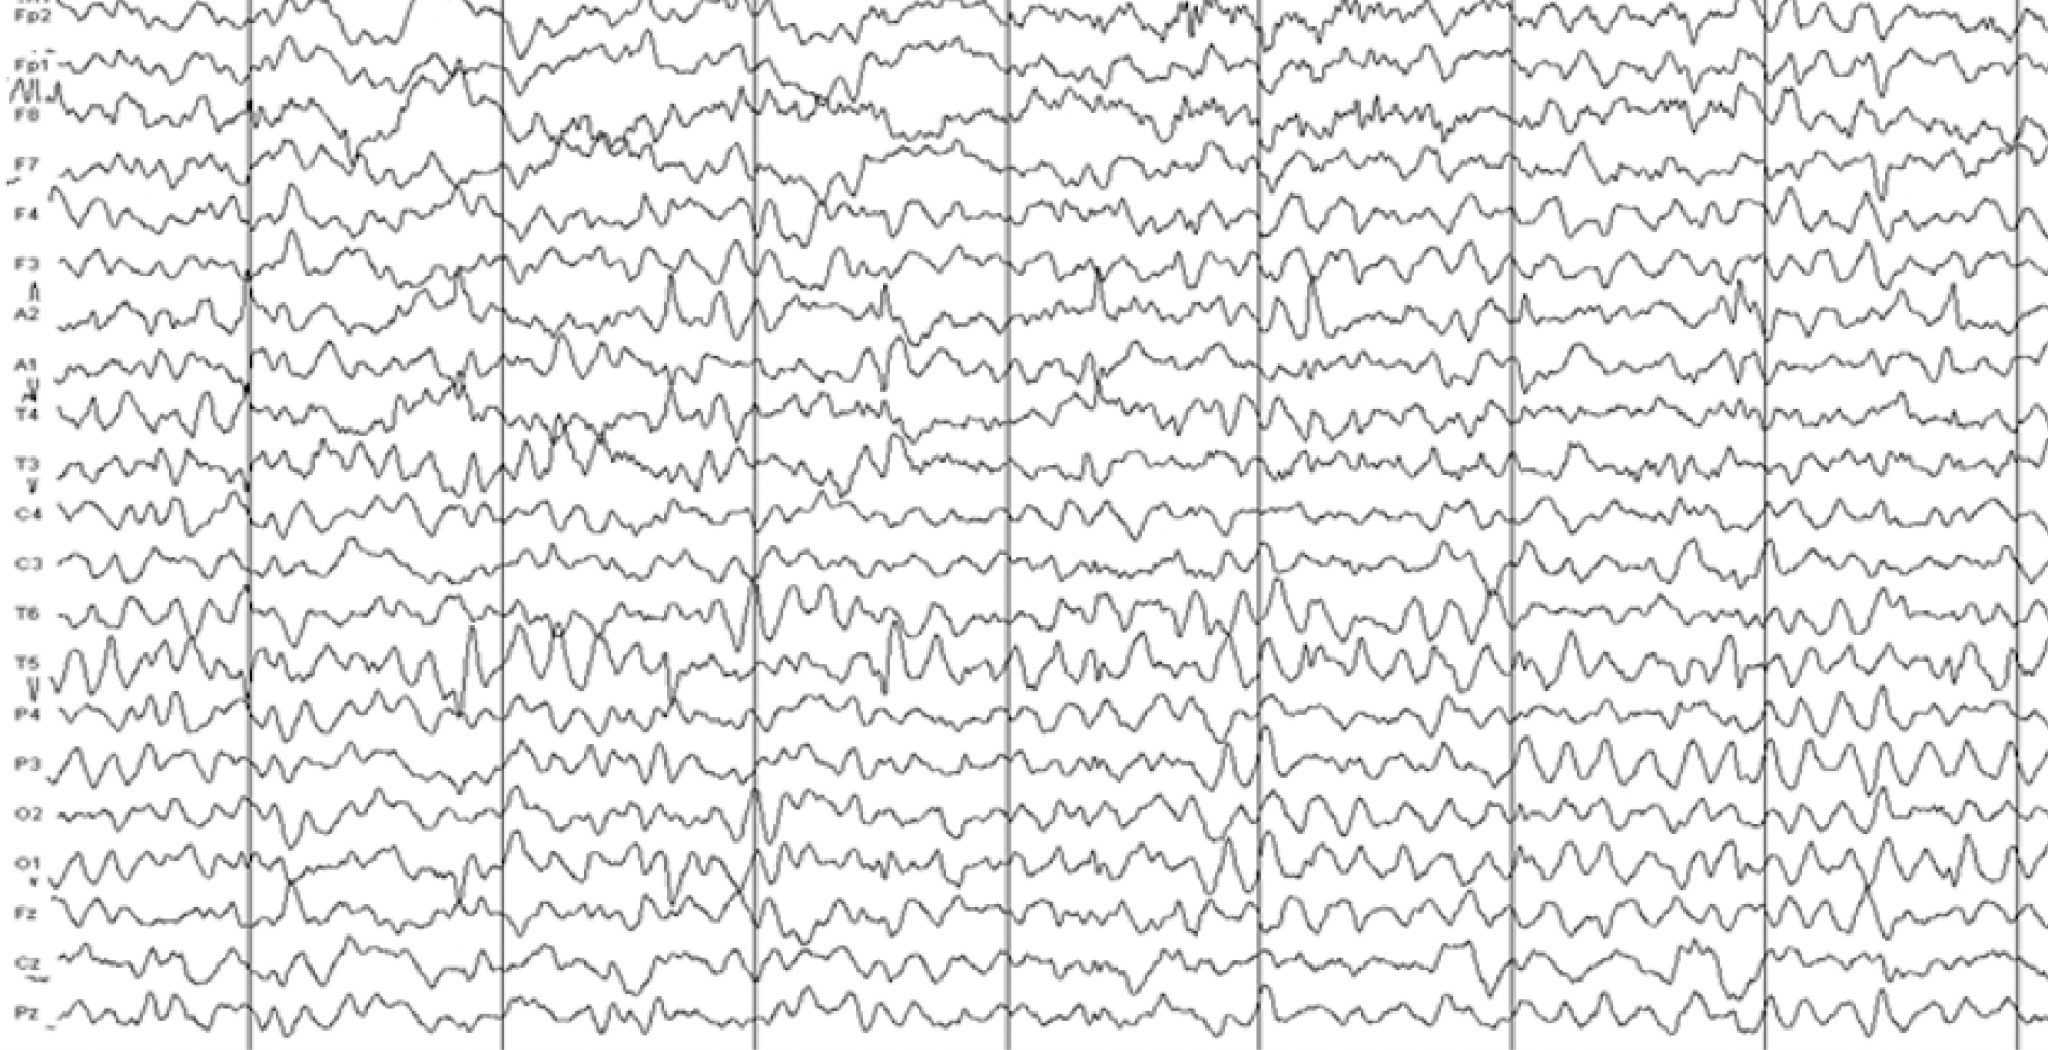 EEG with delirium